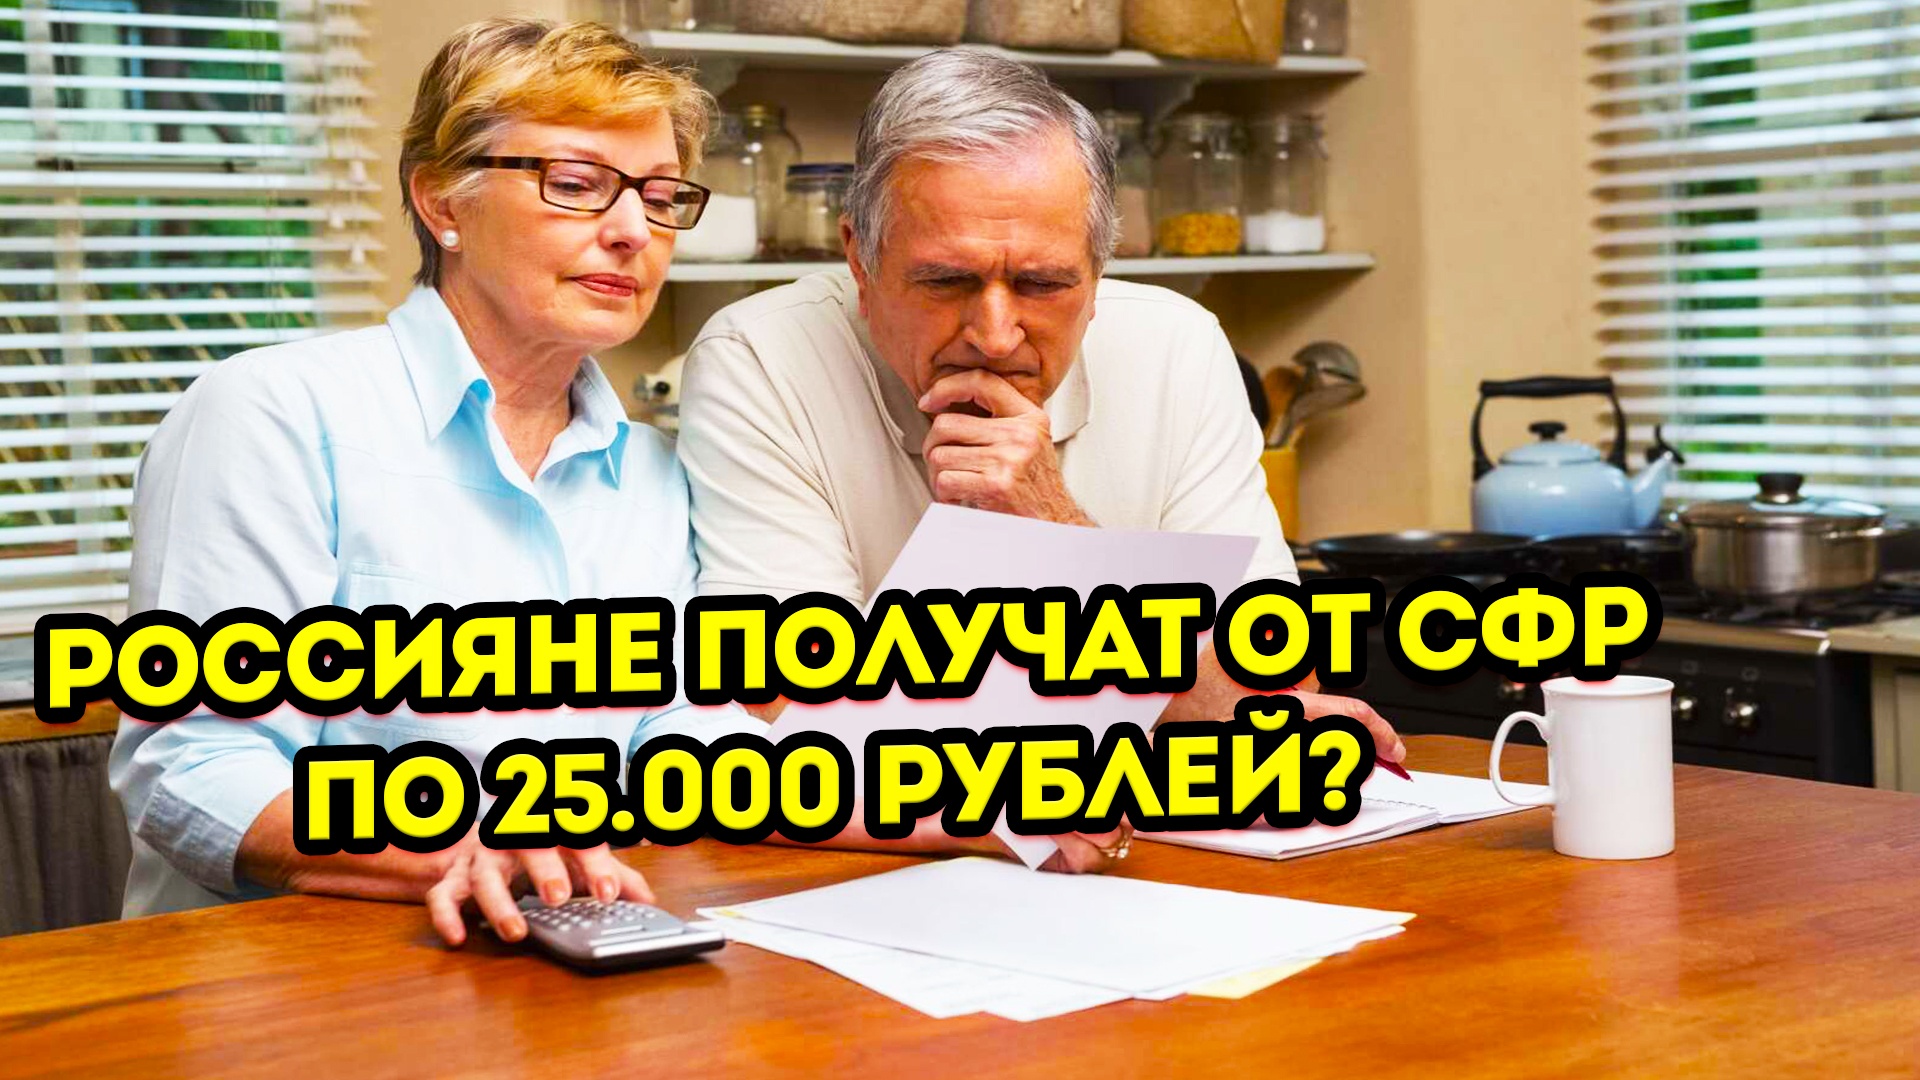 Принято решение выдать Россиянам разово по 25 000 рублей от СФР в феврале